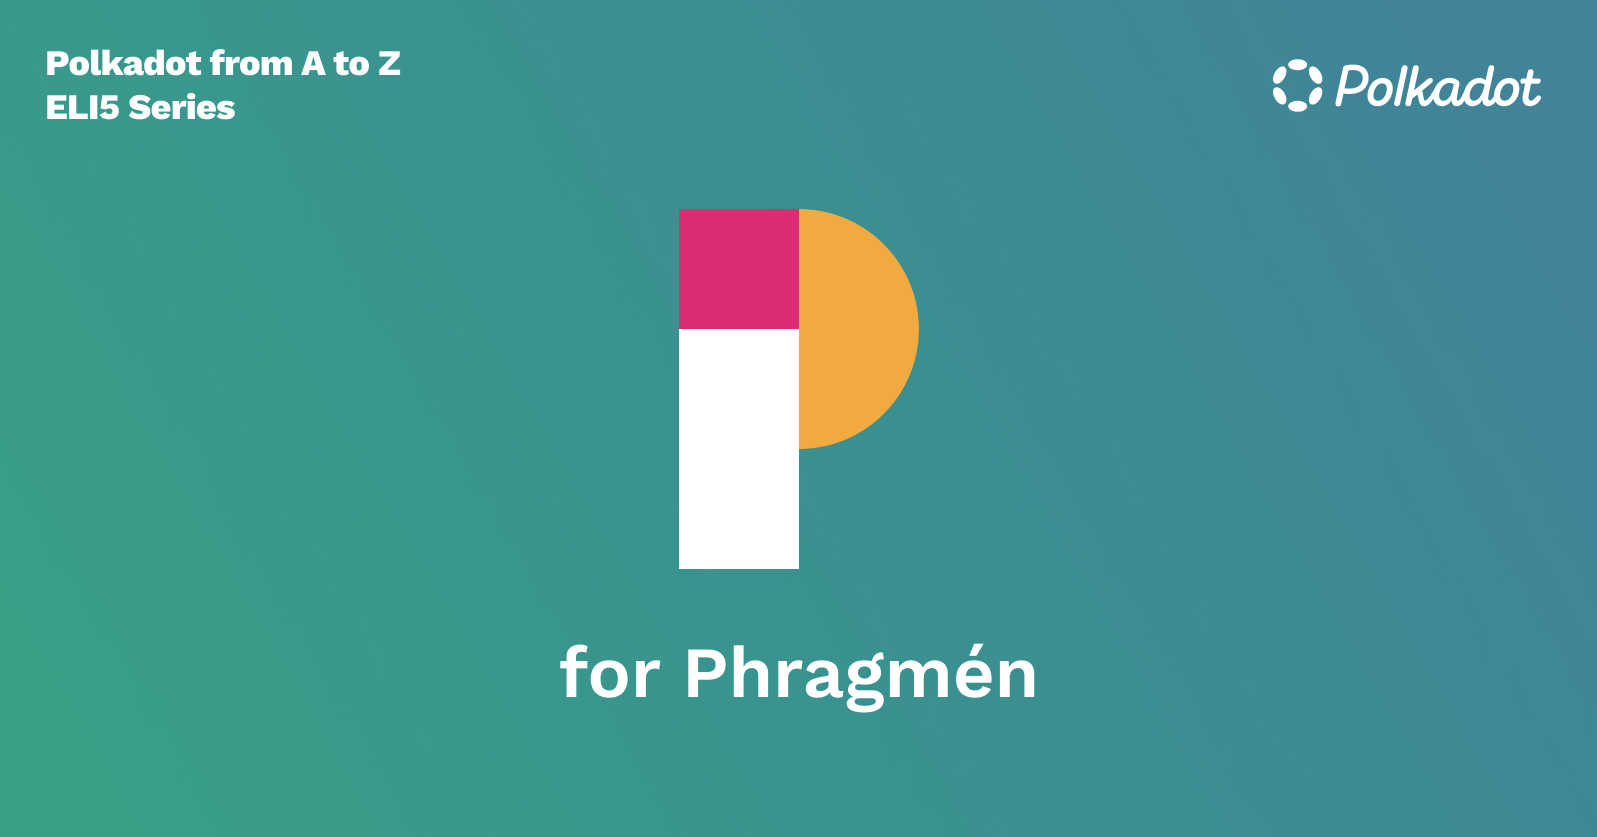 P for Phragmén